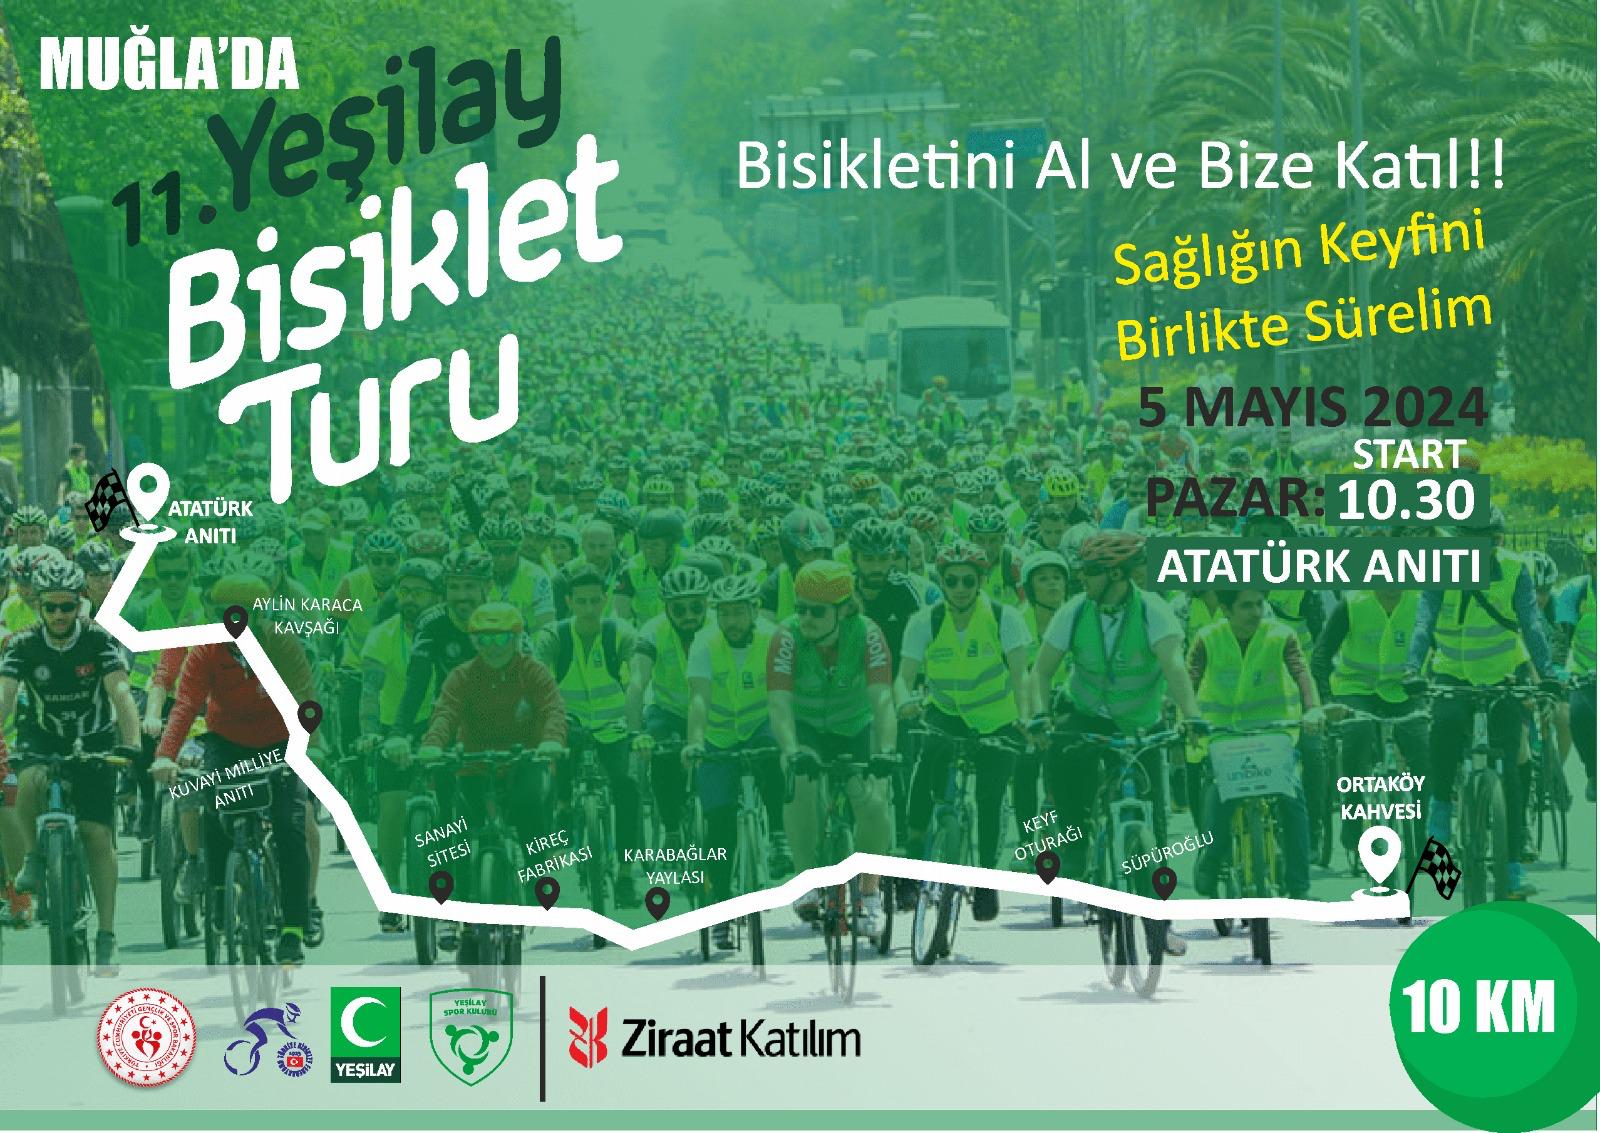 Muğla’da 11. Yeşilay Bisiklet Turu 5 Mayıs’ta Düzenlenecek (3)